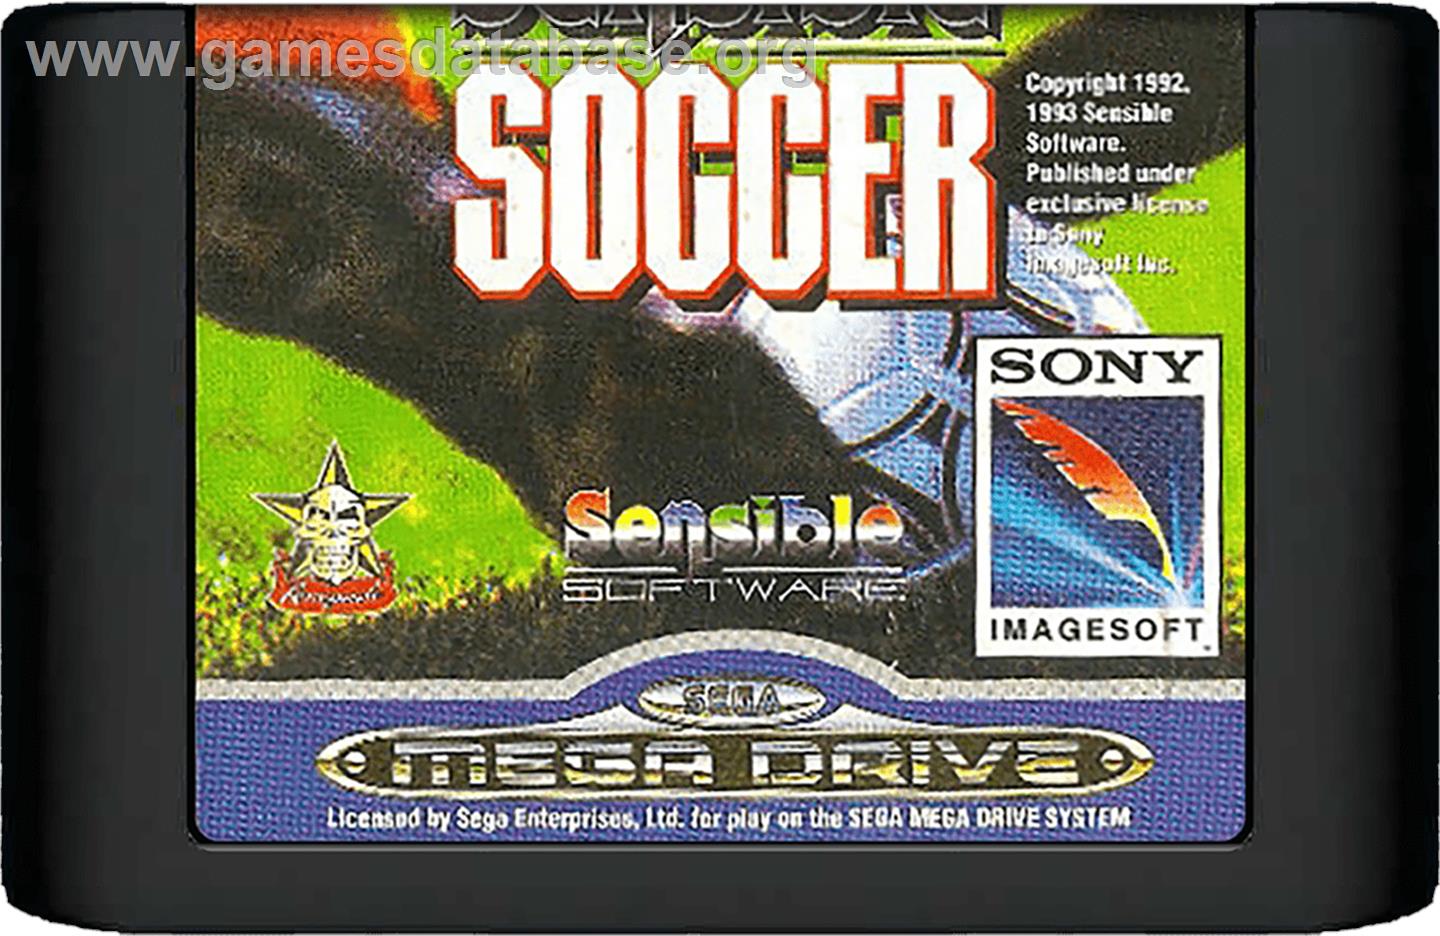 Sensible Soccer: European Champions: 92/93 Edition - Sega Genesis - Artwork - Cartridge